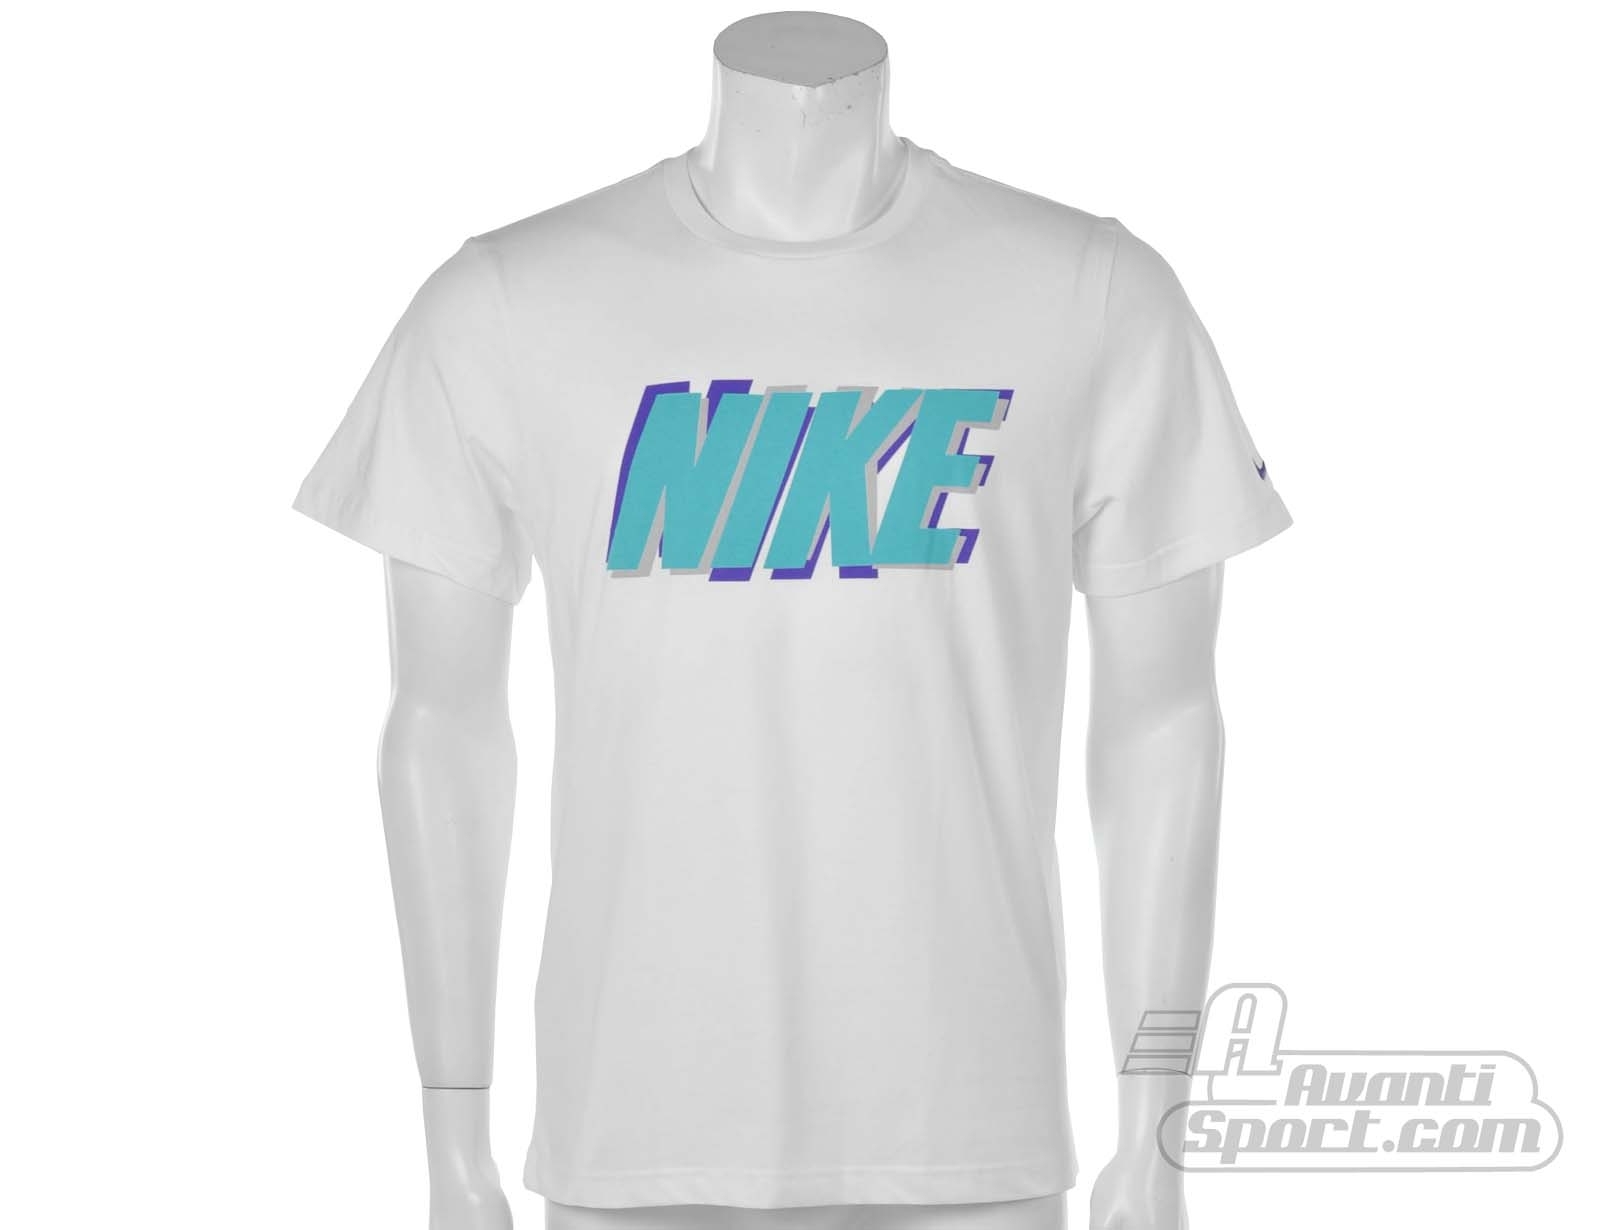 Avantisport - Nike - Nike Logo Tee - Nike Herenkleding